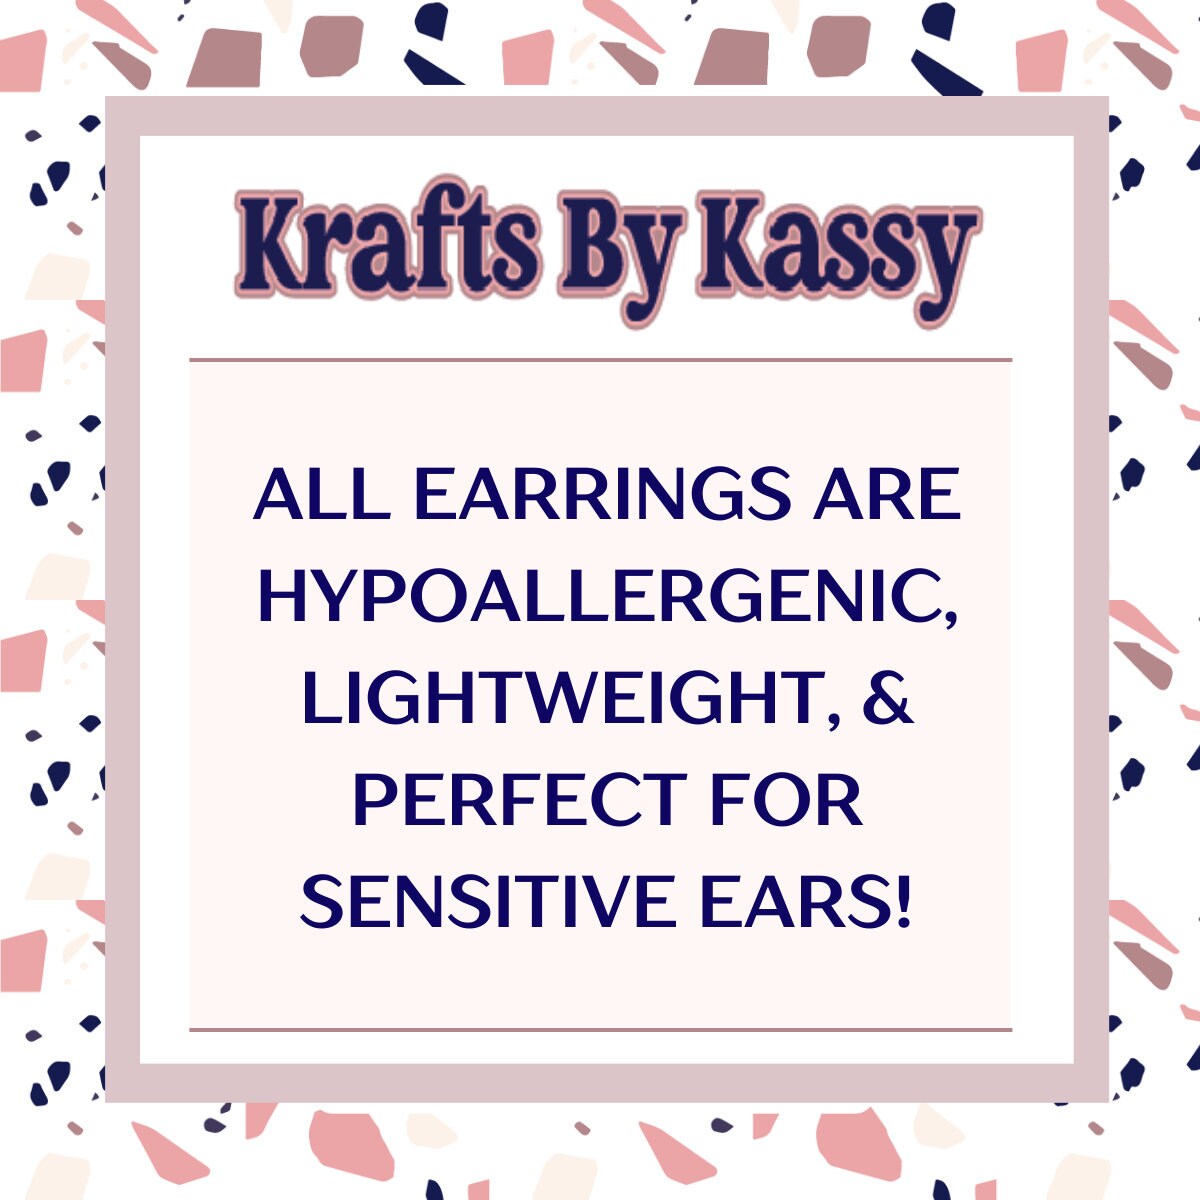 Heart Dangle Earrings, Valentine's Earrings, Fun Accessories, Statement Acrylic Earrings, Heart Acrylic Earrings, Pink Bow